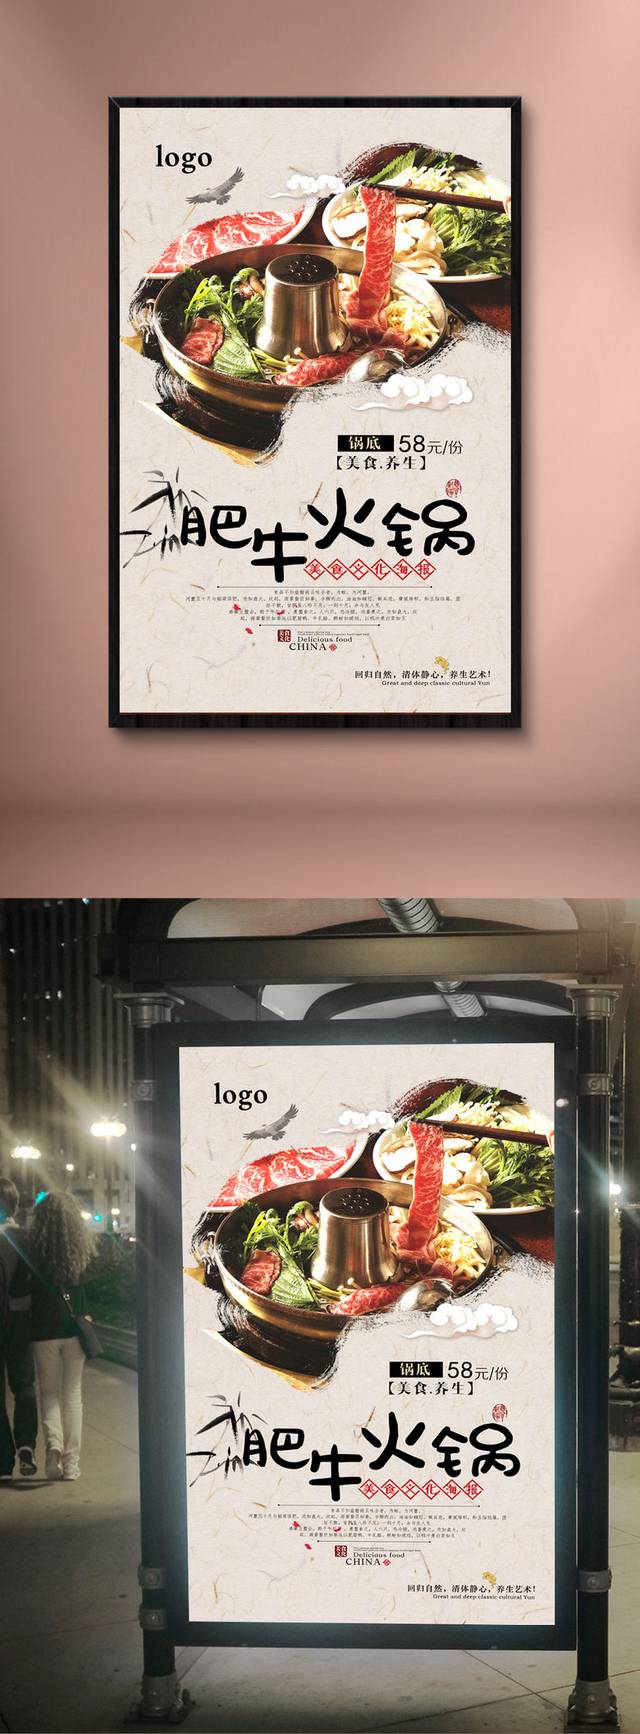 肥牛火锅宣传海报设计